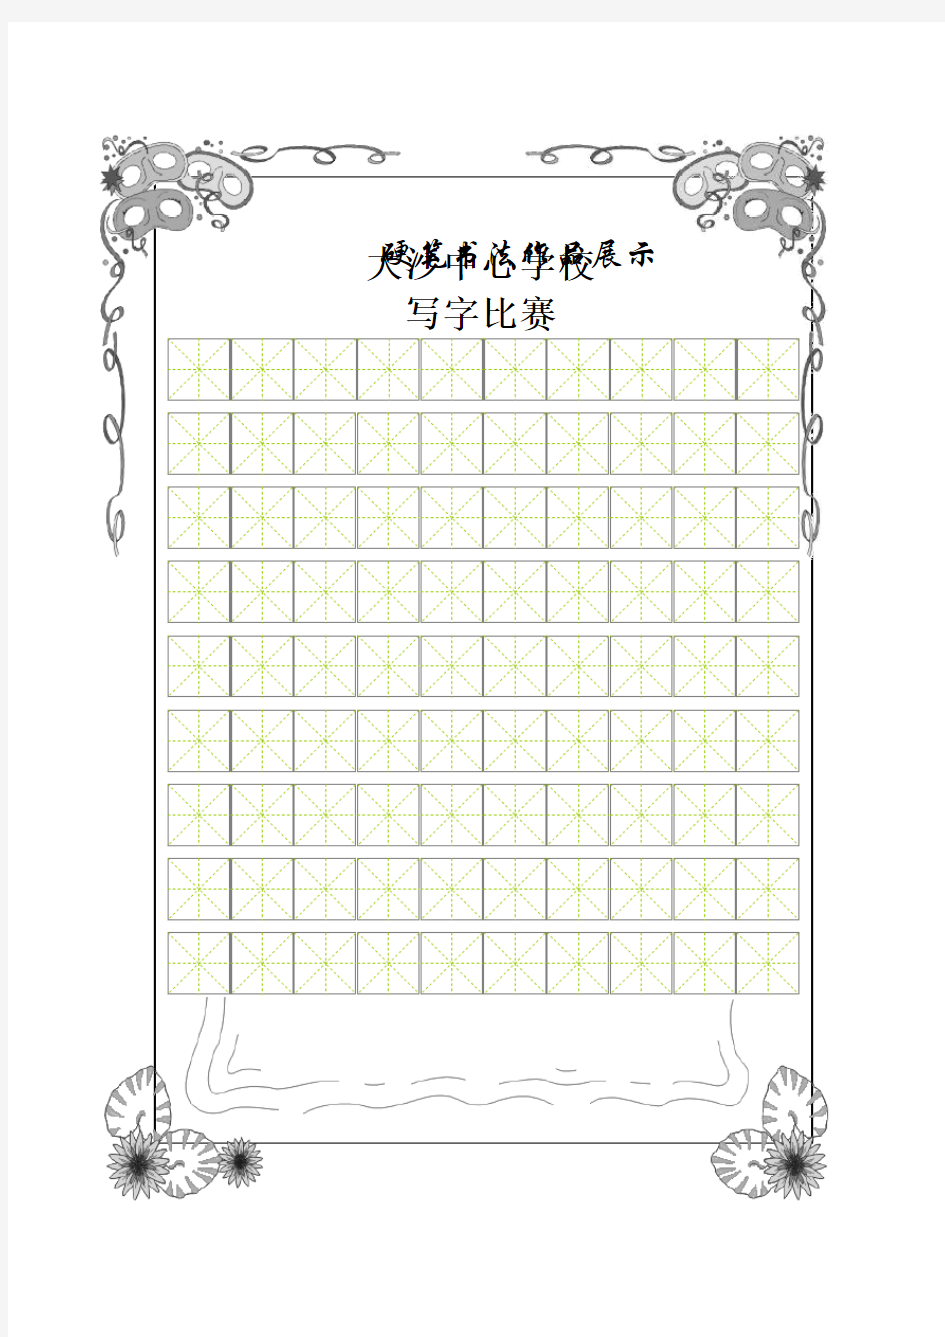 书法比赛专用纸精美田字格